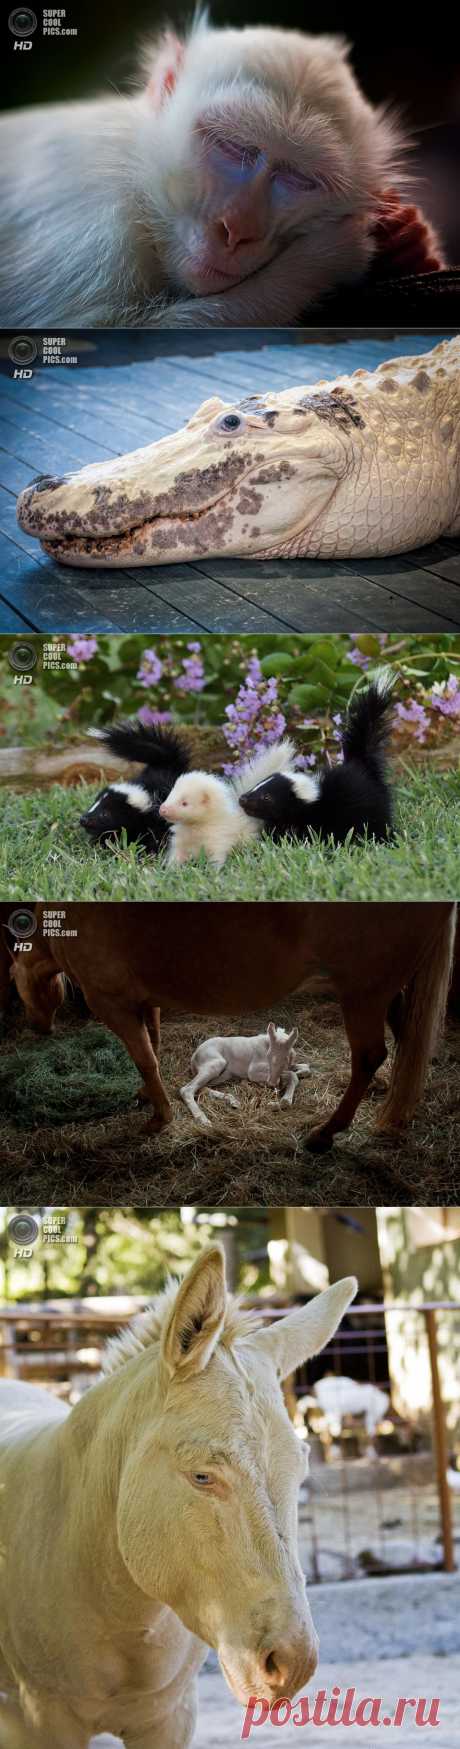 Животные-альбиносы (15 фото) — SuperCoolPics